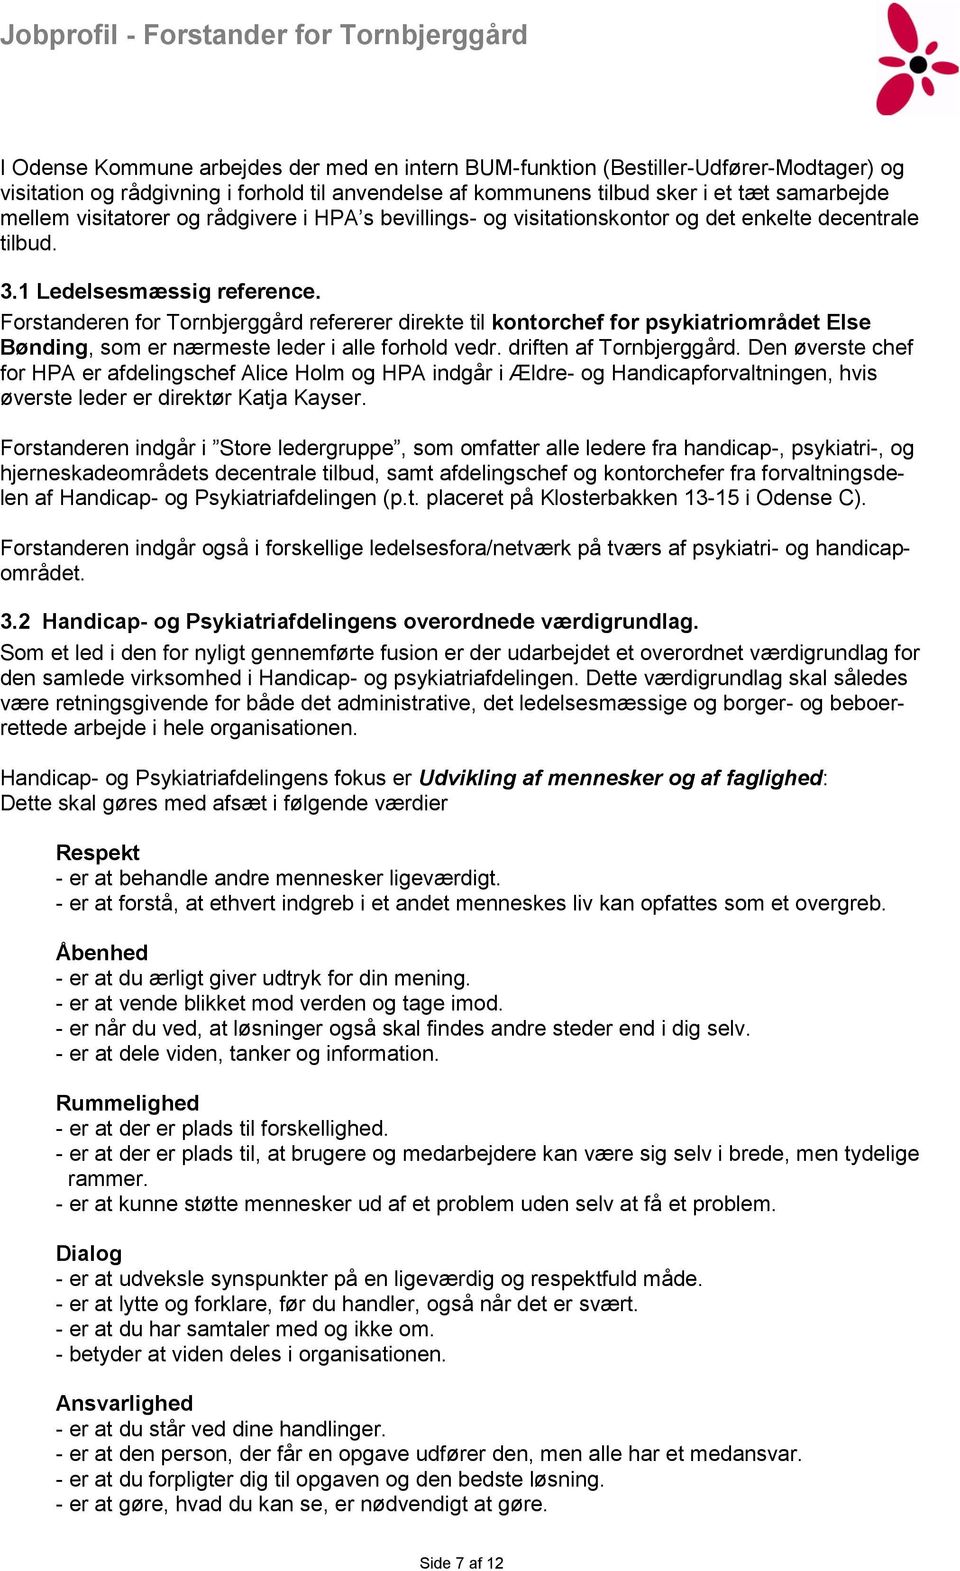 Forstanderen for Tornbjerggård refererer direkte til kontorchef for psykiatriområdet Else Bønding, som er nærmeste leder i alle forhold vedr. driften af Tornbjerggård.